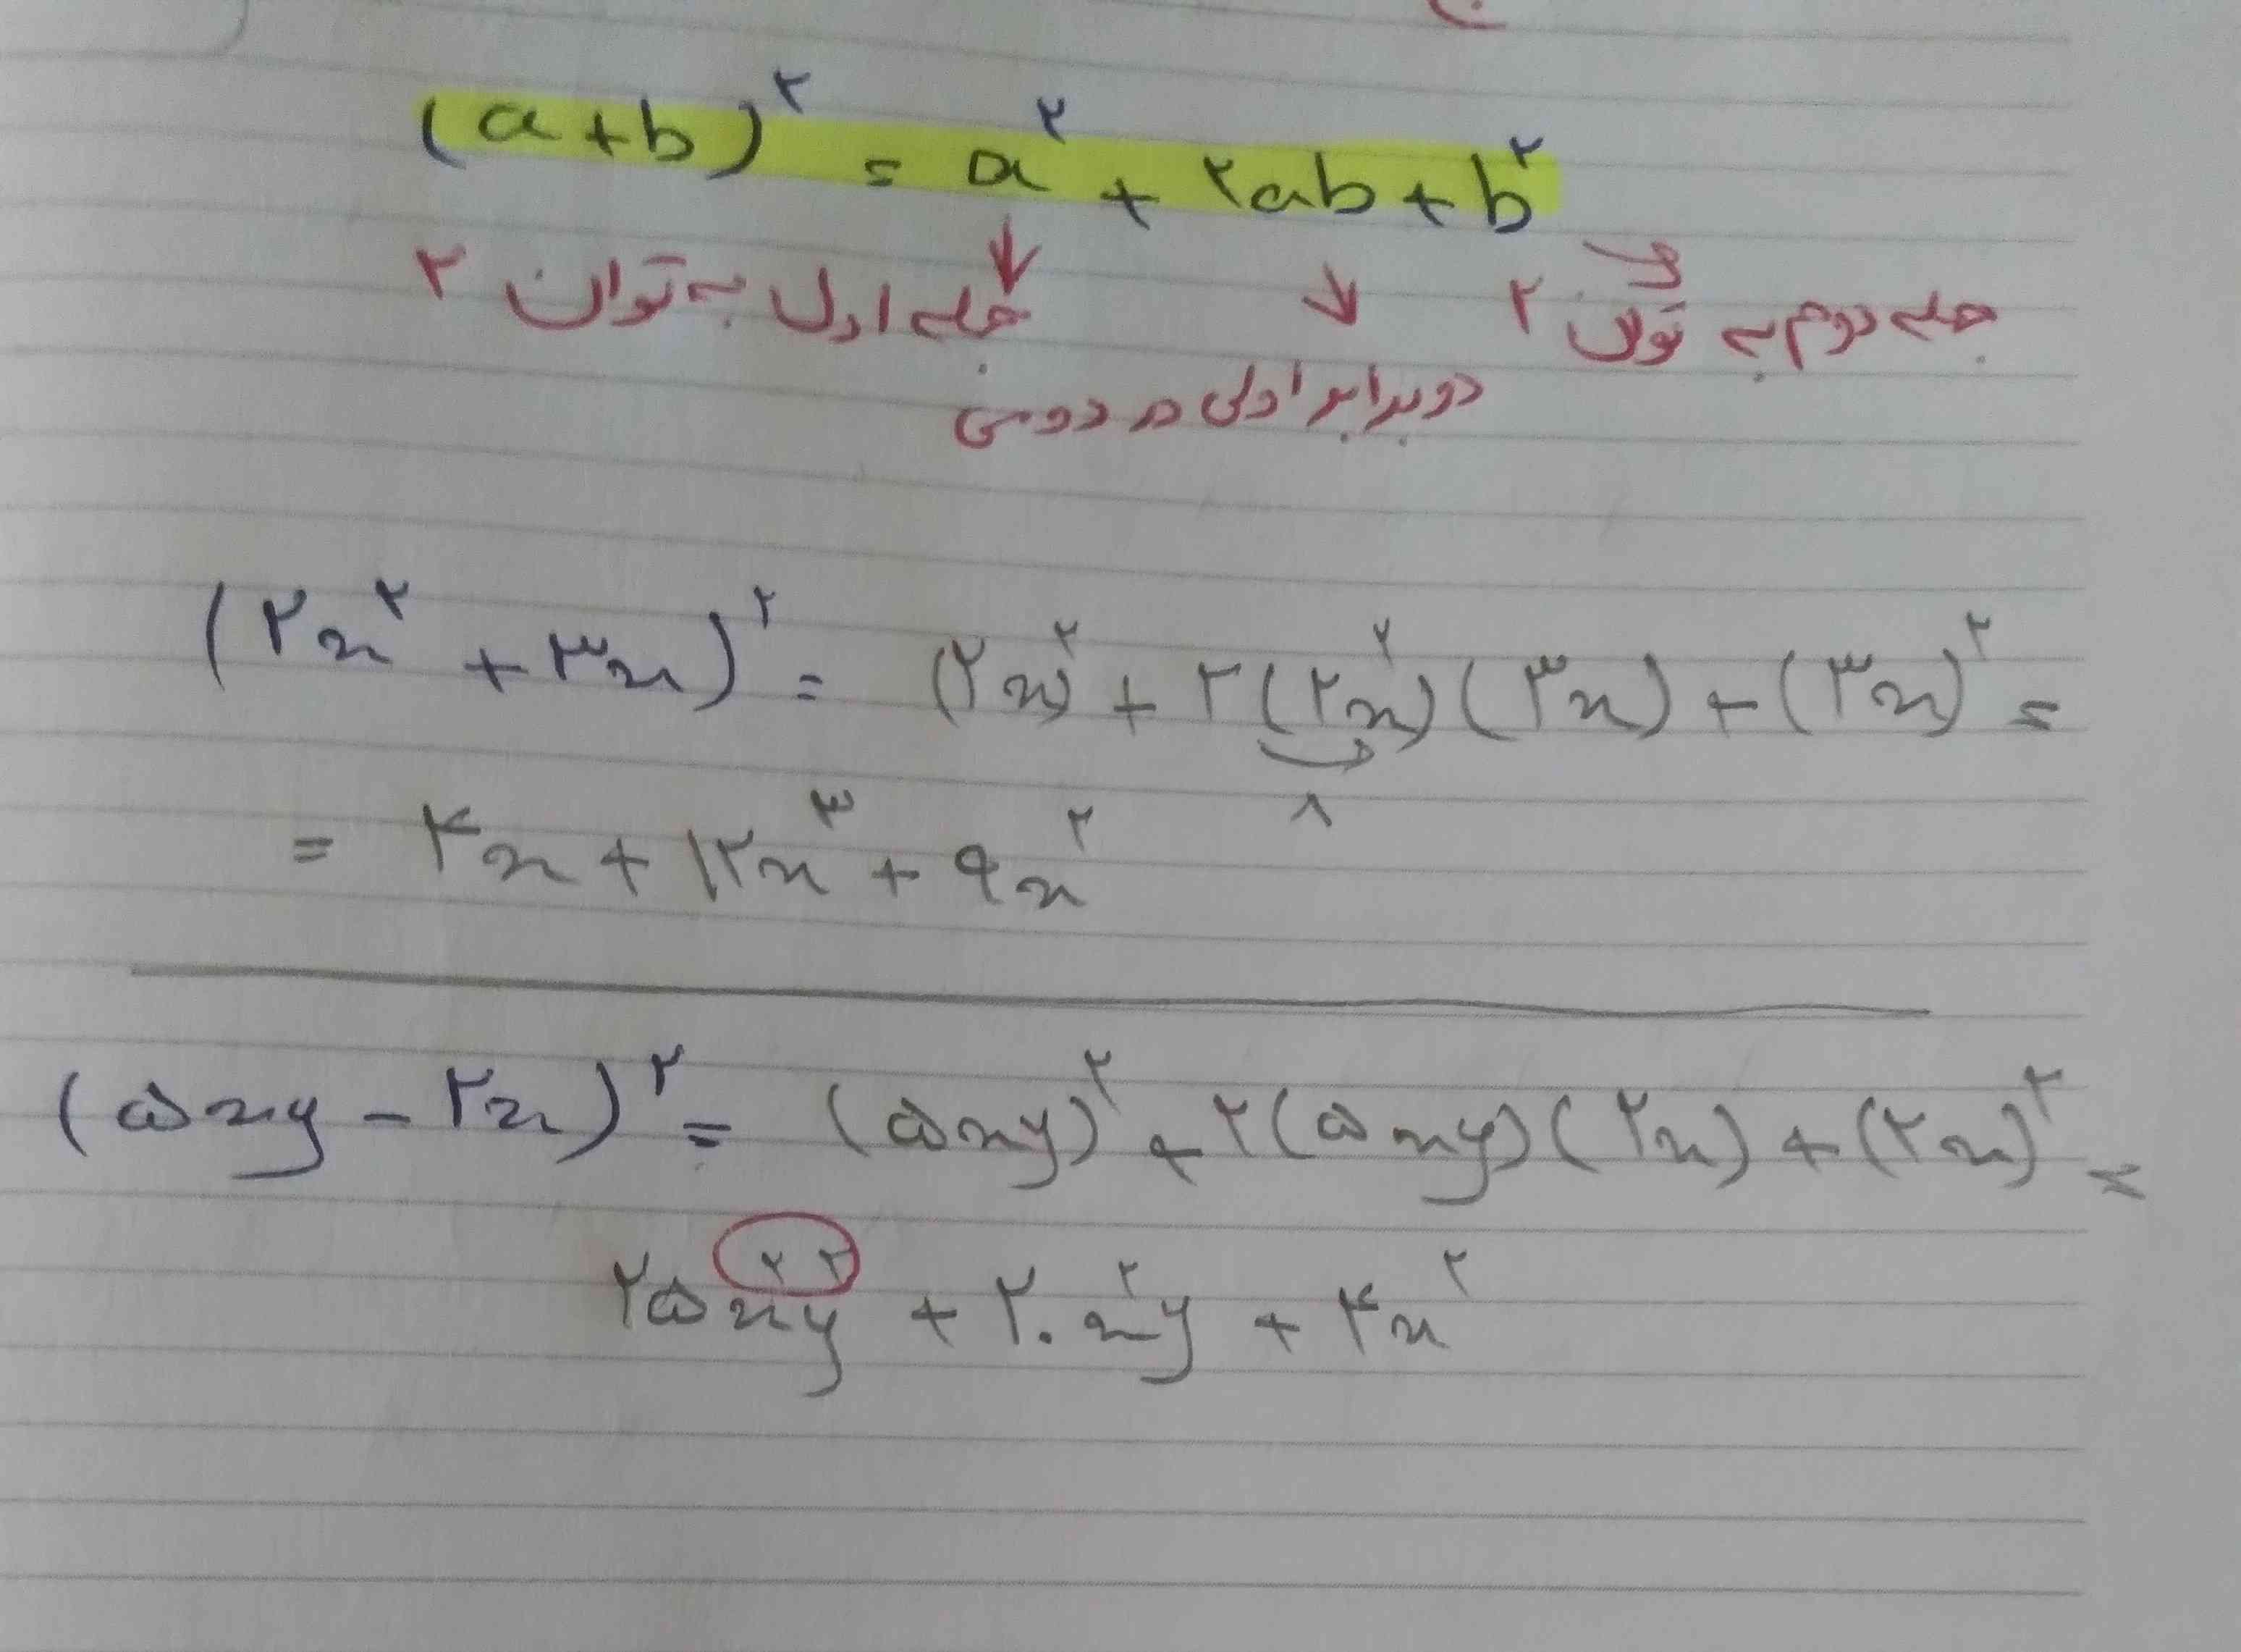 بچه ها مثال دوم اون قسمتی که دورش خط کشیدم علت اینکه هردو متغیر توان ۲ دارن اینه که تو قسمت اول ²(5xy) رسید چون توان دو بیرون پرانتزِ شامل هردو متغیر میشه؟